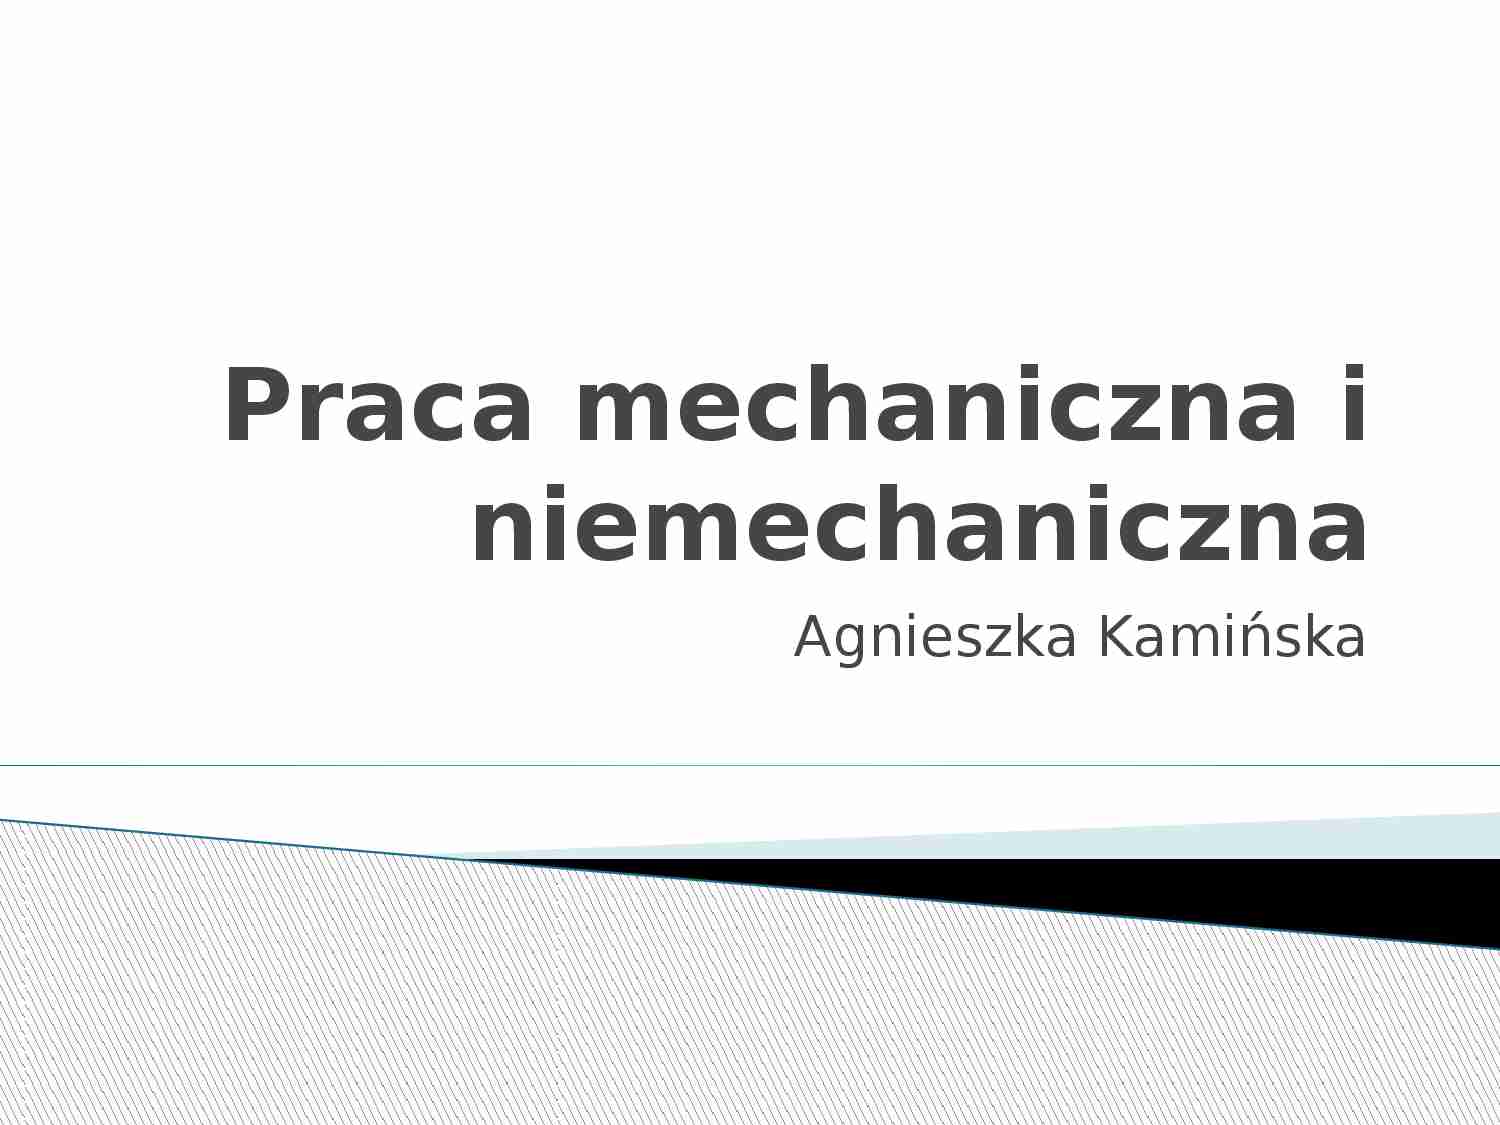 Praca mechaniczna i niemiechaniczna - prezentacja - strona 1